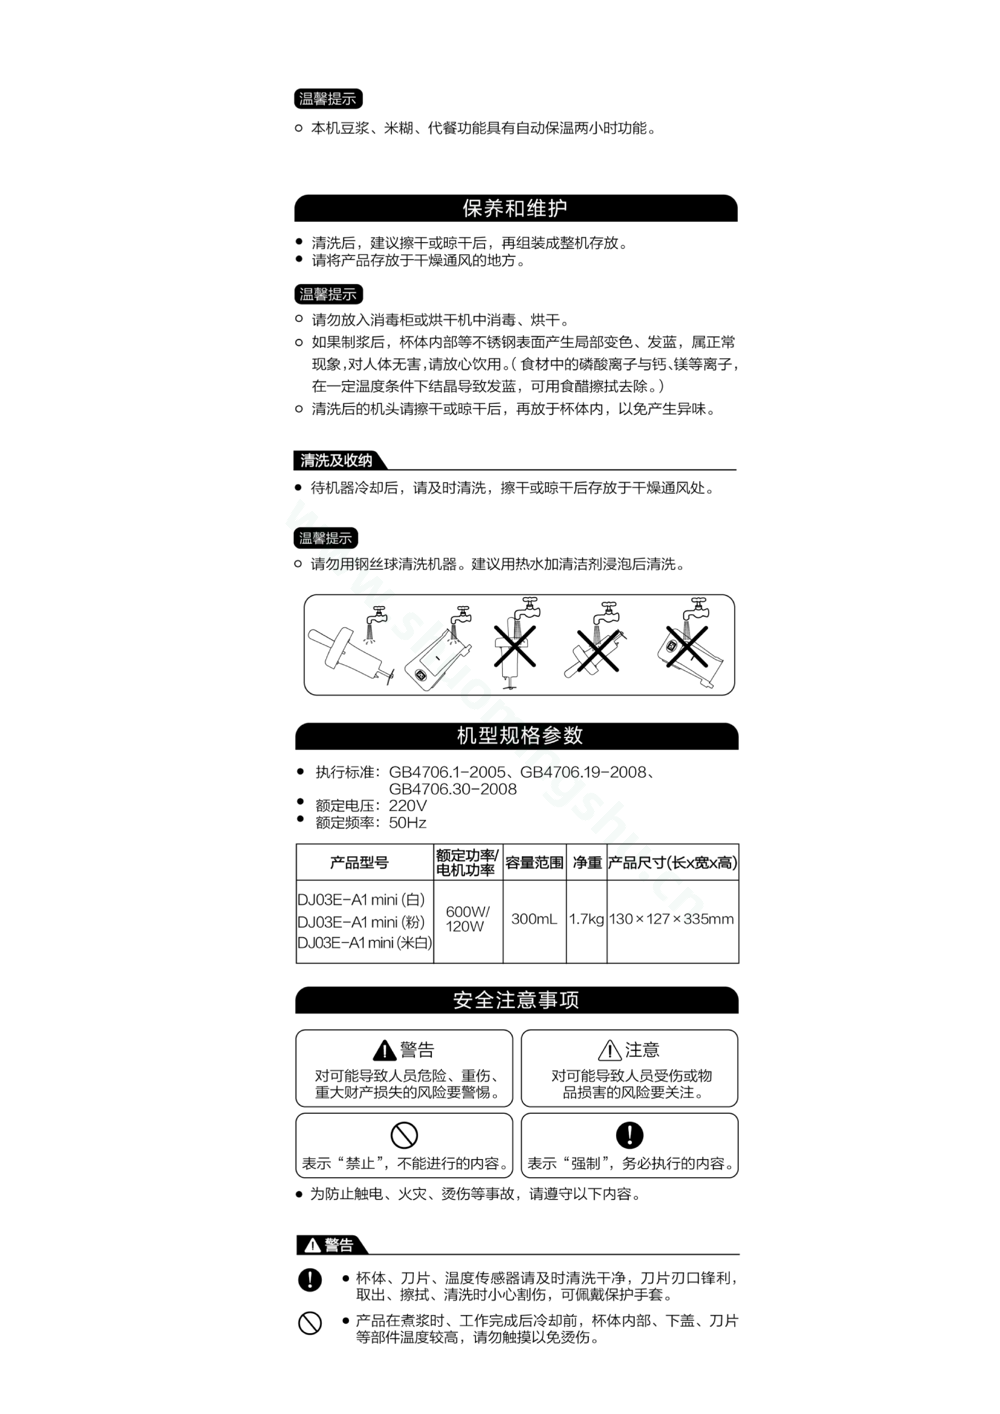 九阳豆浆机DJ03E-A1mini说明书第4页